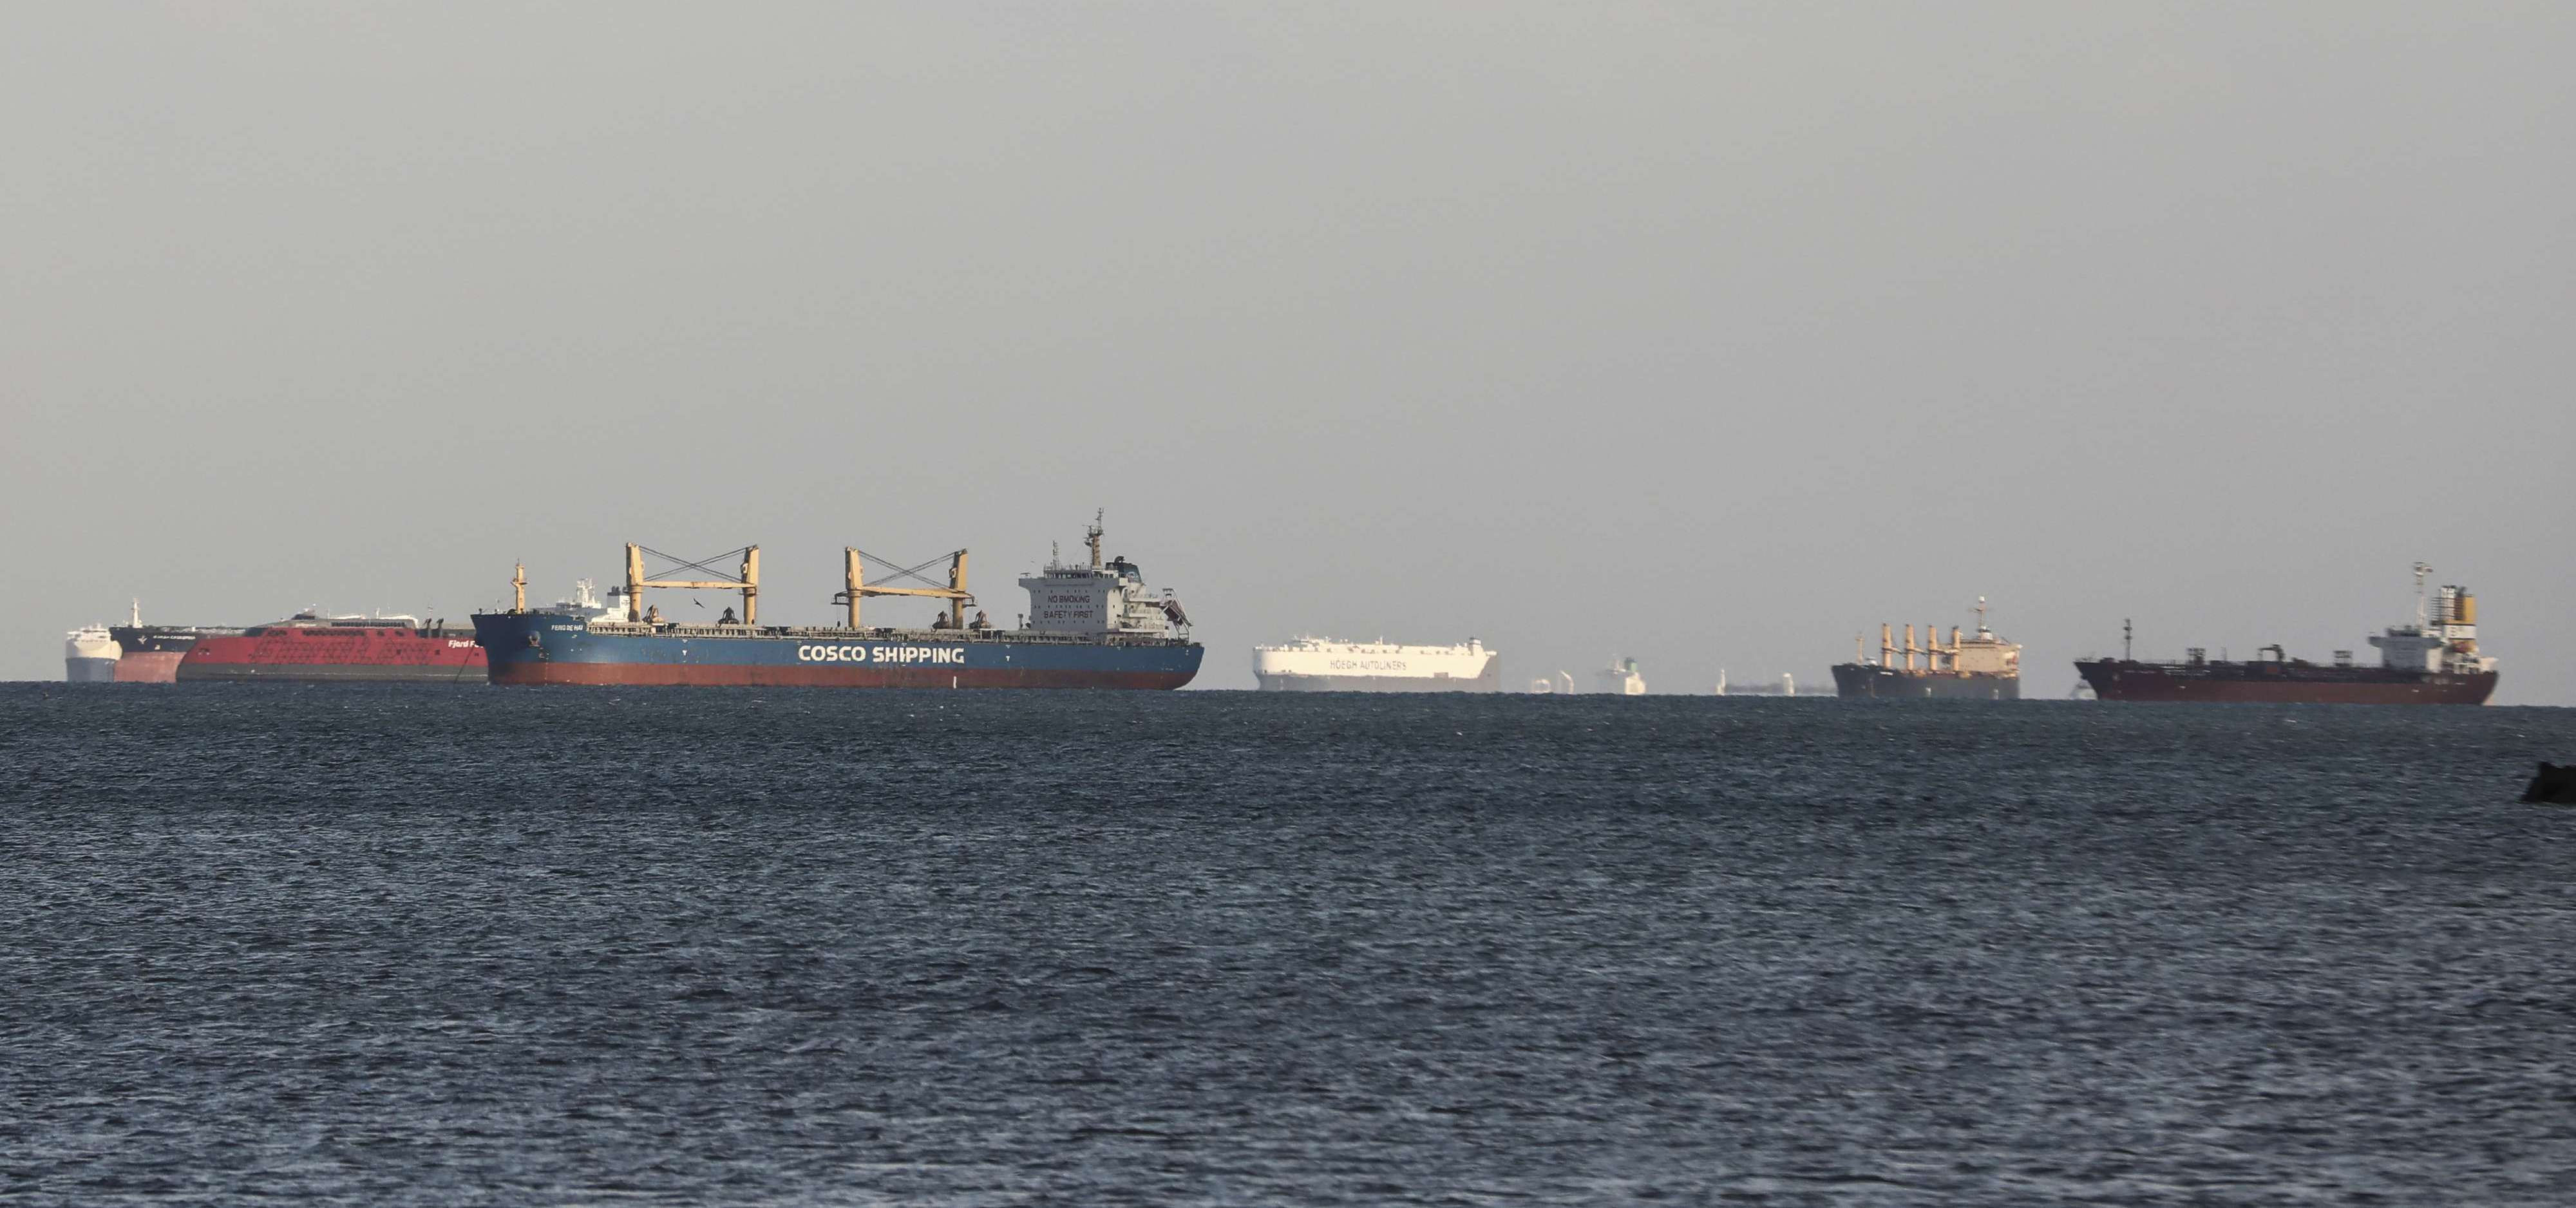 عشرات السفن التجارية وناقلات الغاز عالقة في قناة السويس في انتظار تعويم سفينة الجانحة في القناة